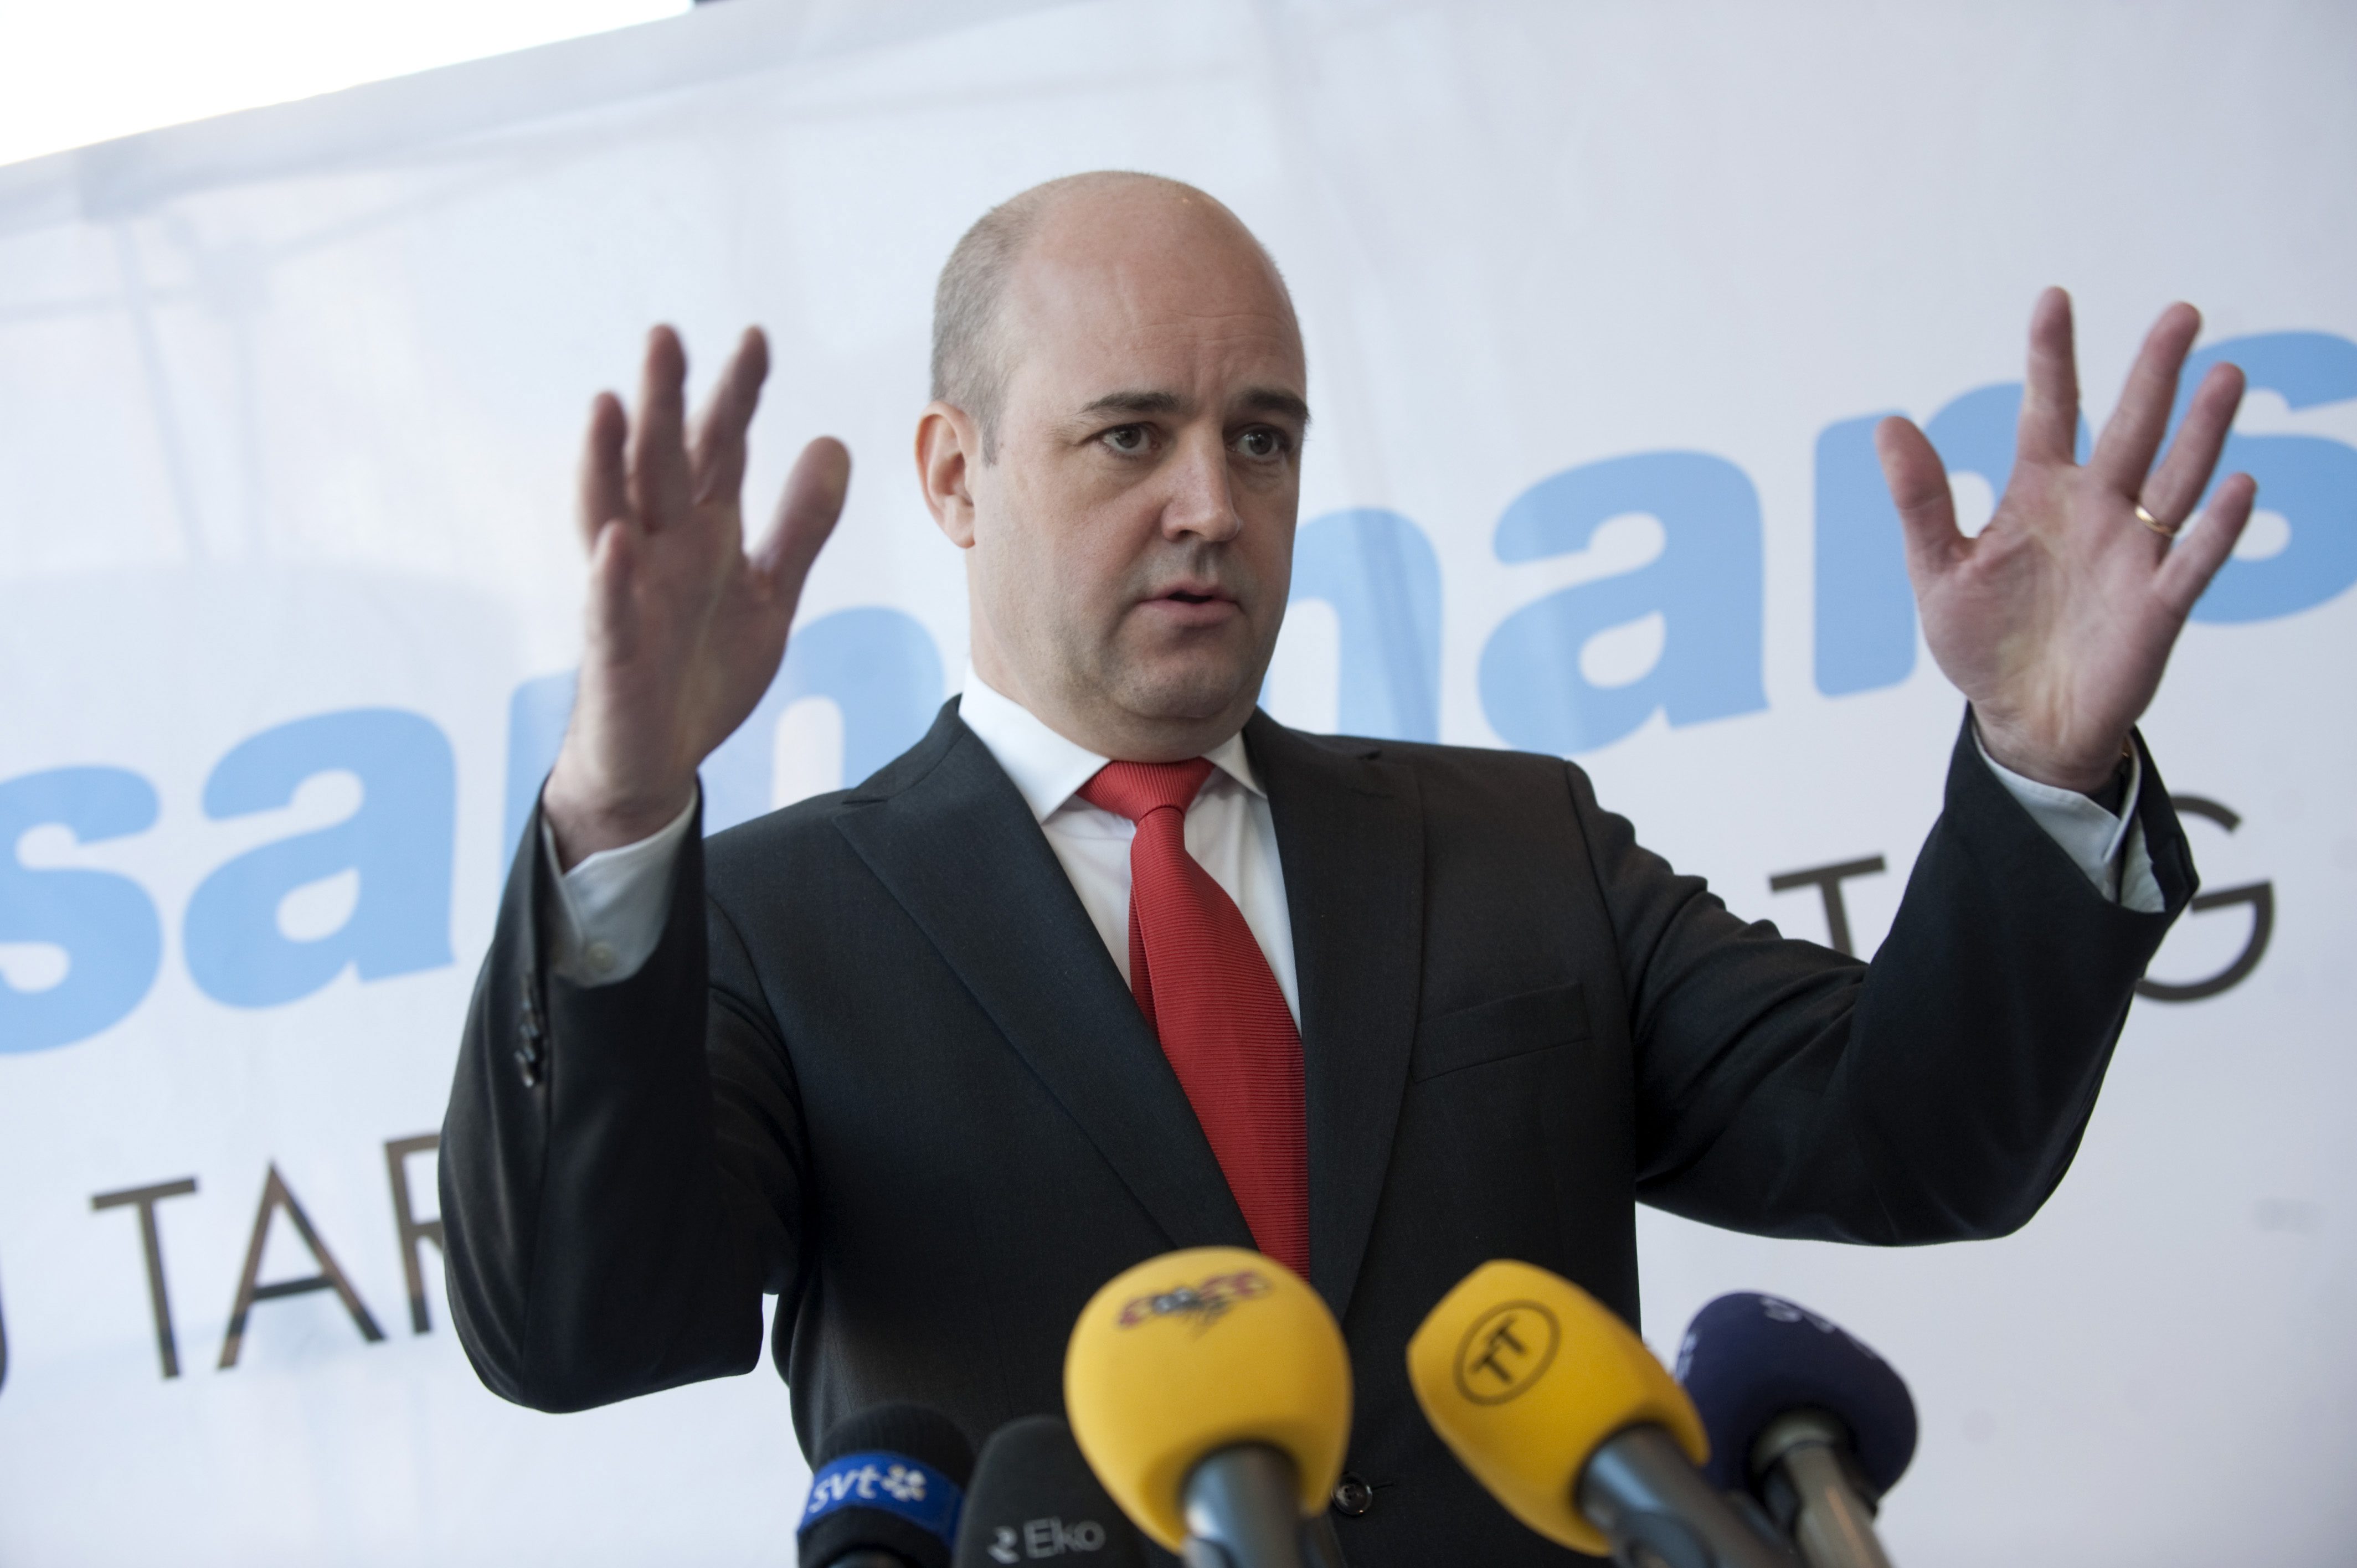 Fredrik Reinfeldt och flera andra statsråd gav FOI klartecken till projektavtalet om vapenfabriken, enligt Ekots nya avslöjande.